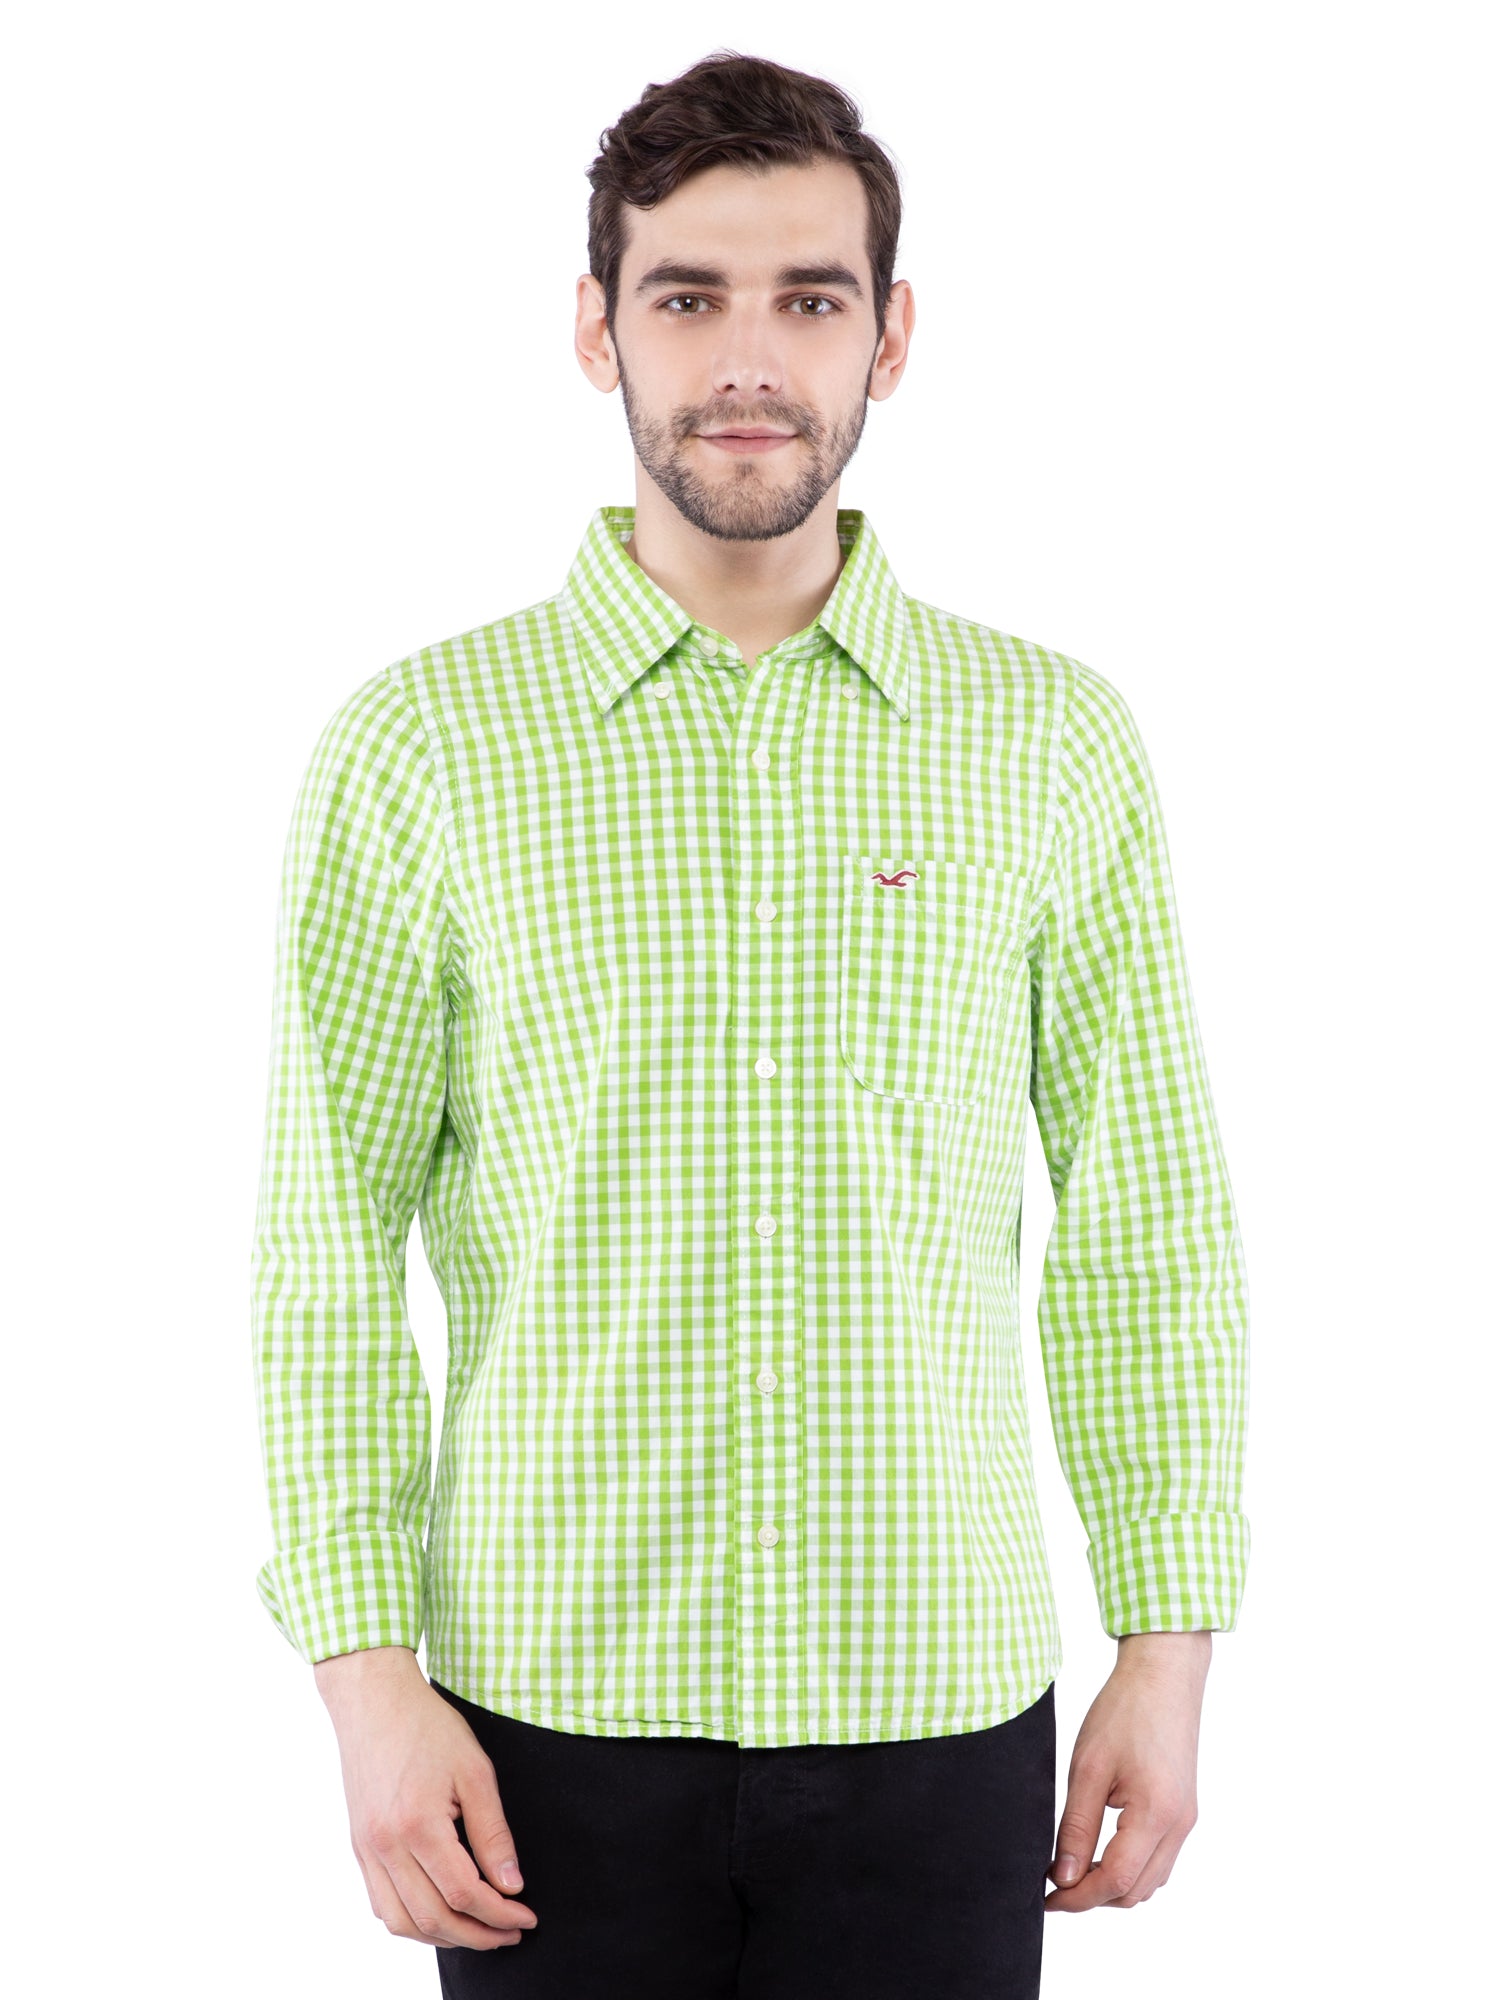 hollister green shirt